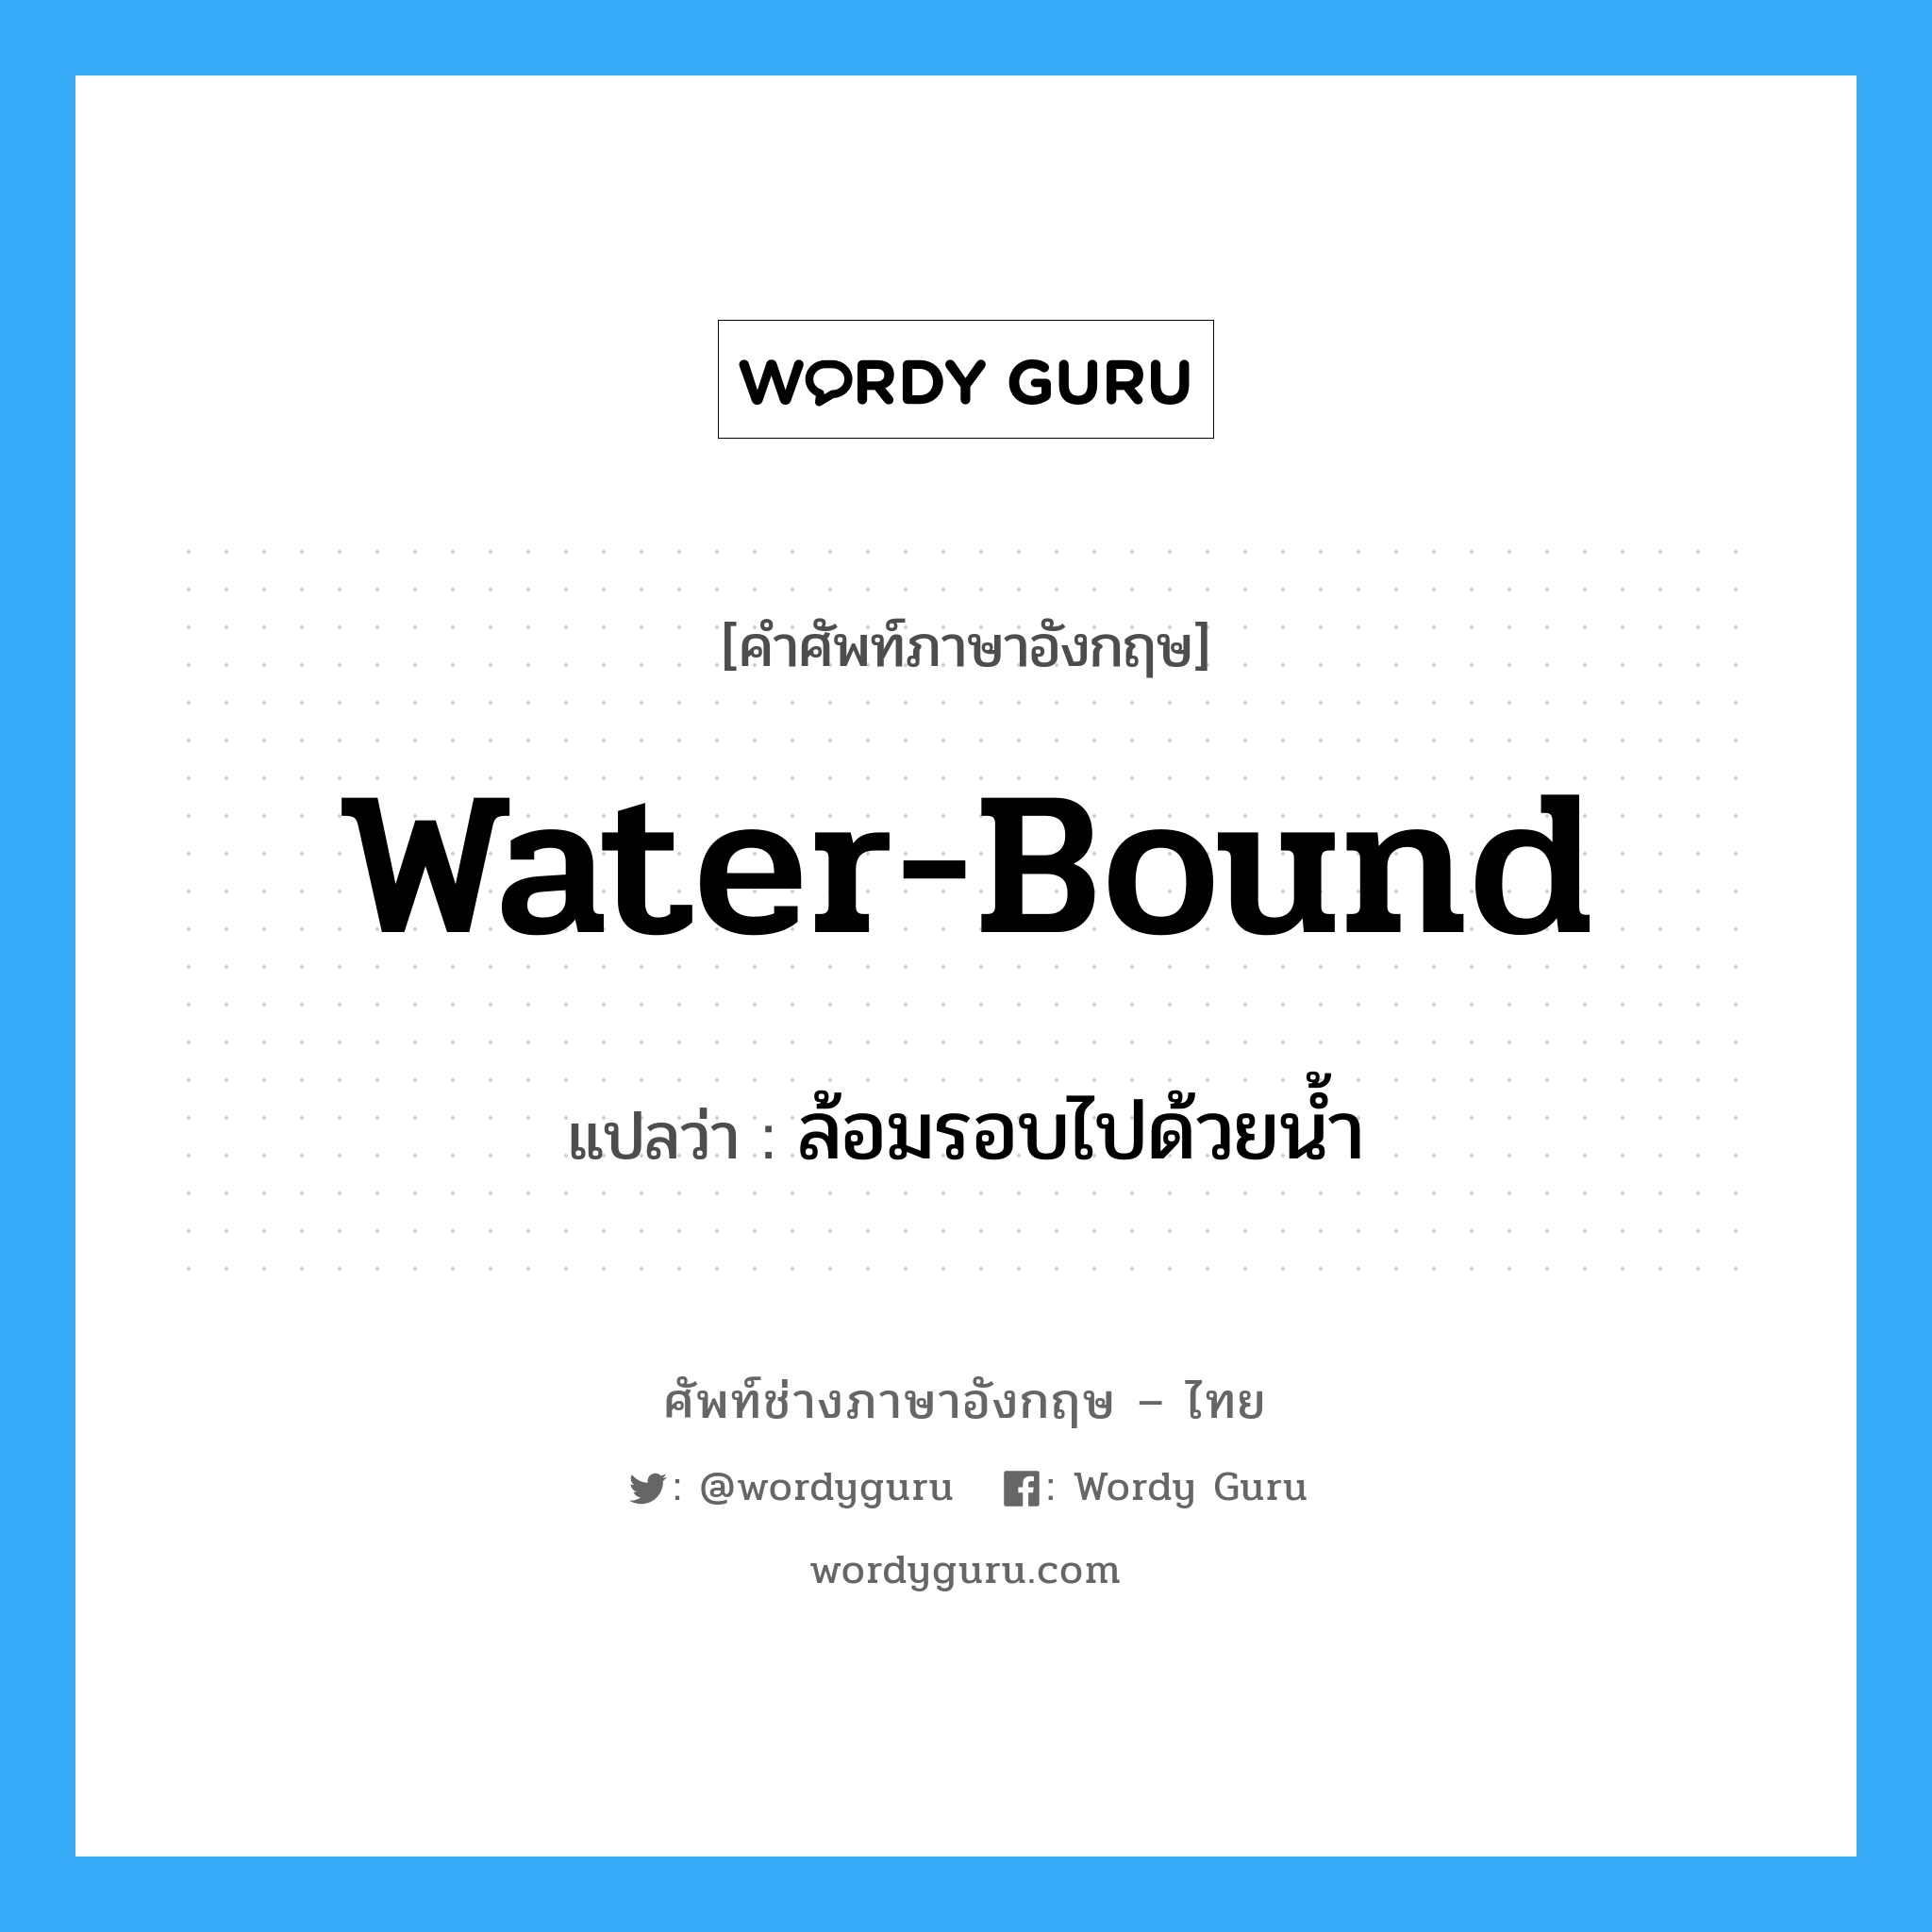 ล้อมรอบไปด้วยน้ำ ภาษาอังกฤษ?, คำศัพท์ช่างภาษาอังกฤษ - ไทย ล้อมรอบไปด้วยน้ำ คำศัพท์ภาษาอังกฤษ ล้อมรอบไปด้วยน้ำ แปลว่า water-bound